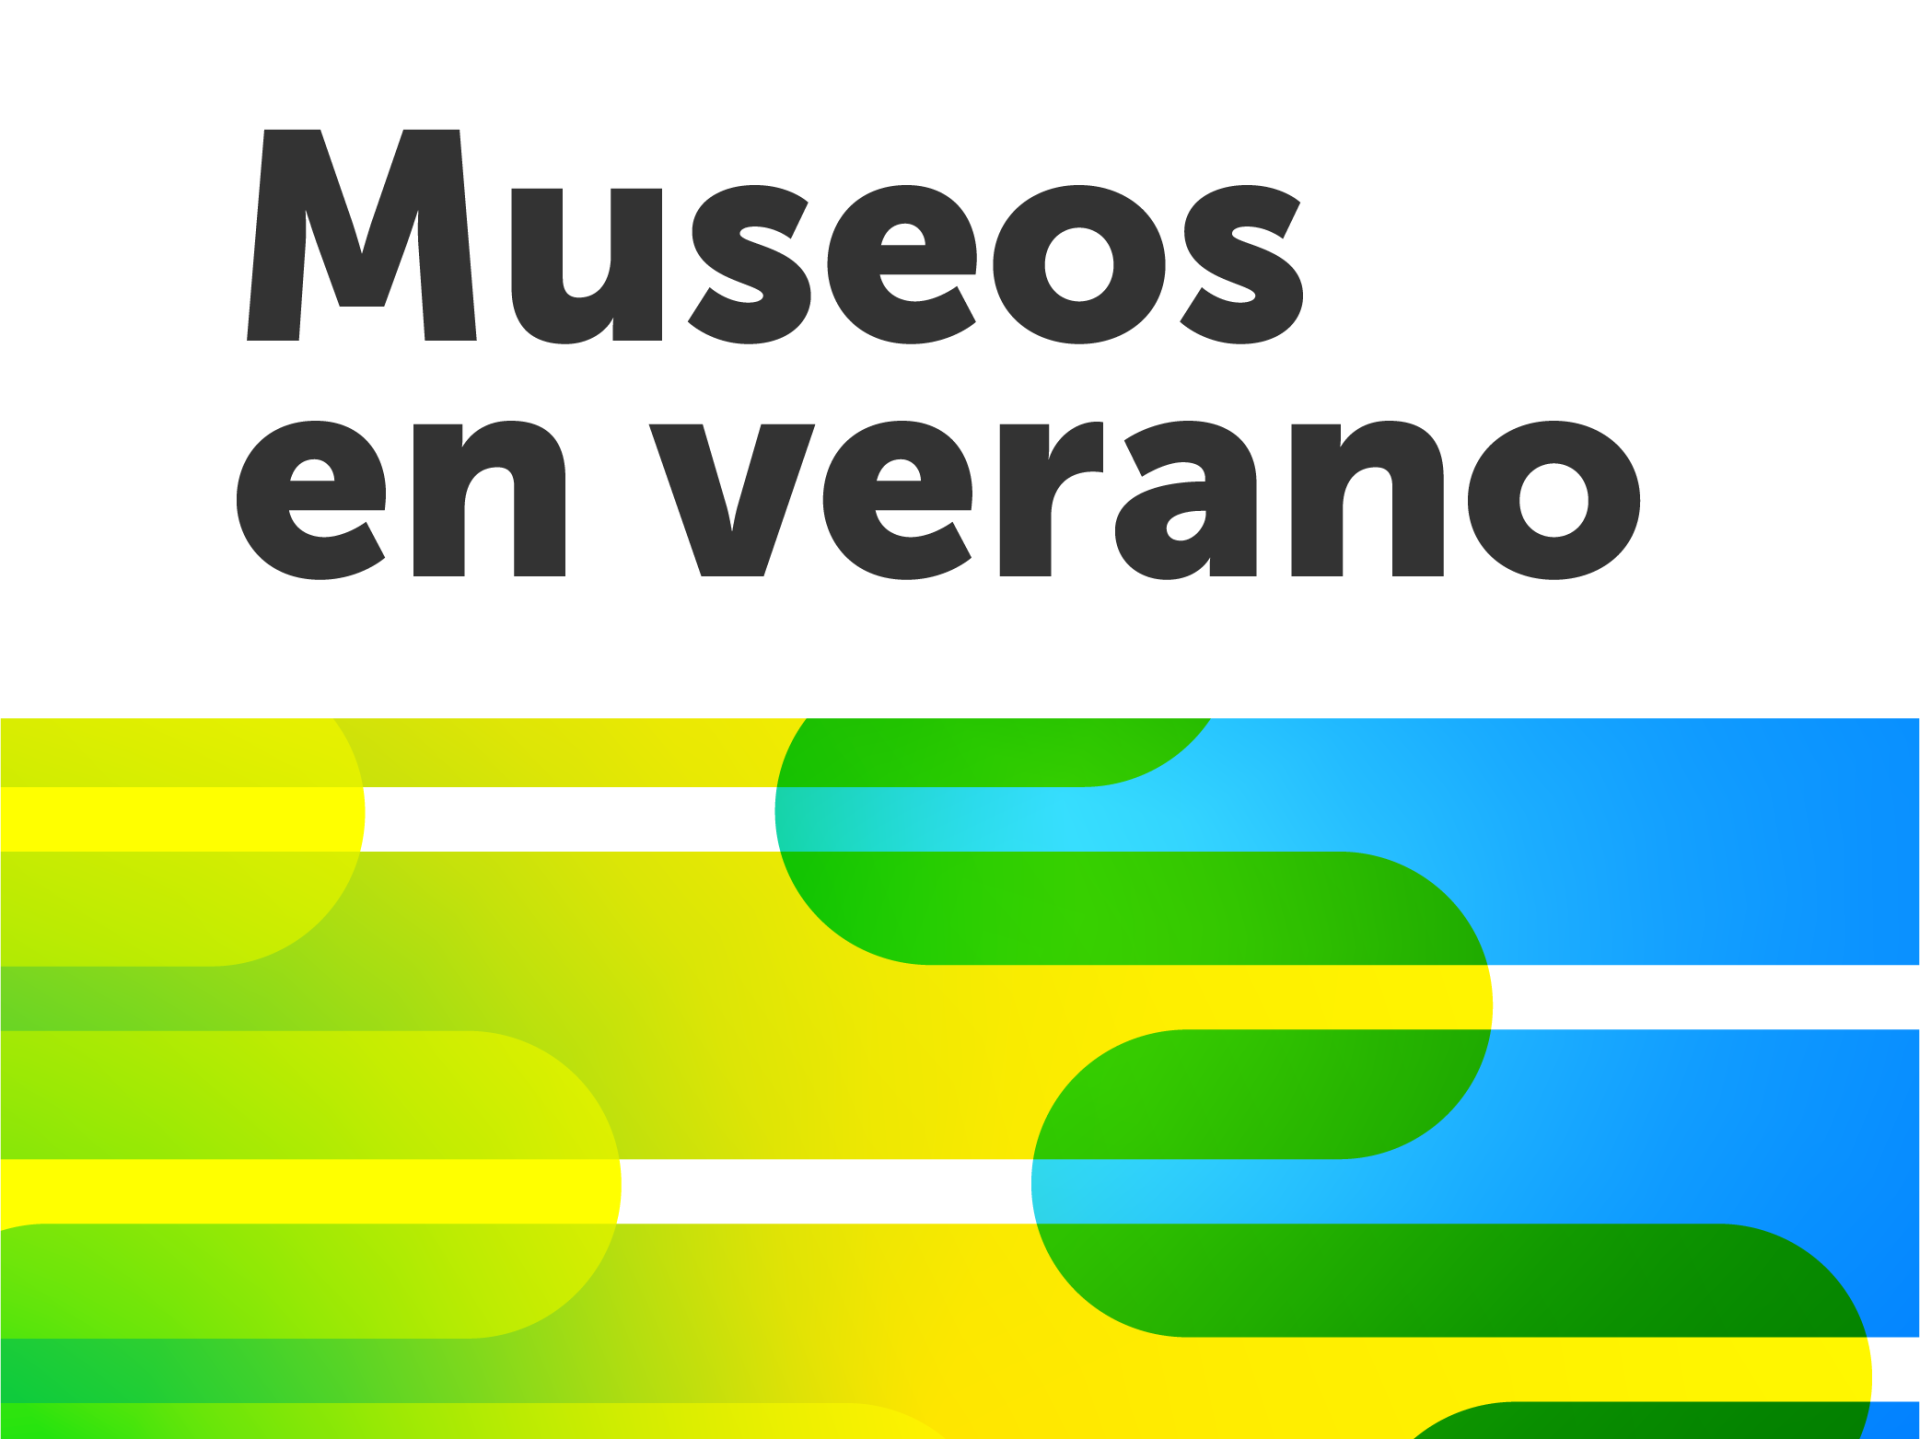 Gráfica en tono verde, amarillo y celeste que incluye la frase "Museos en Verano"